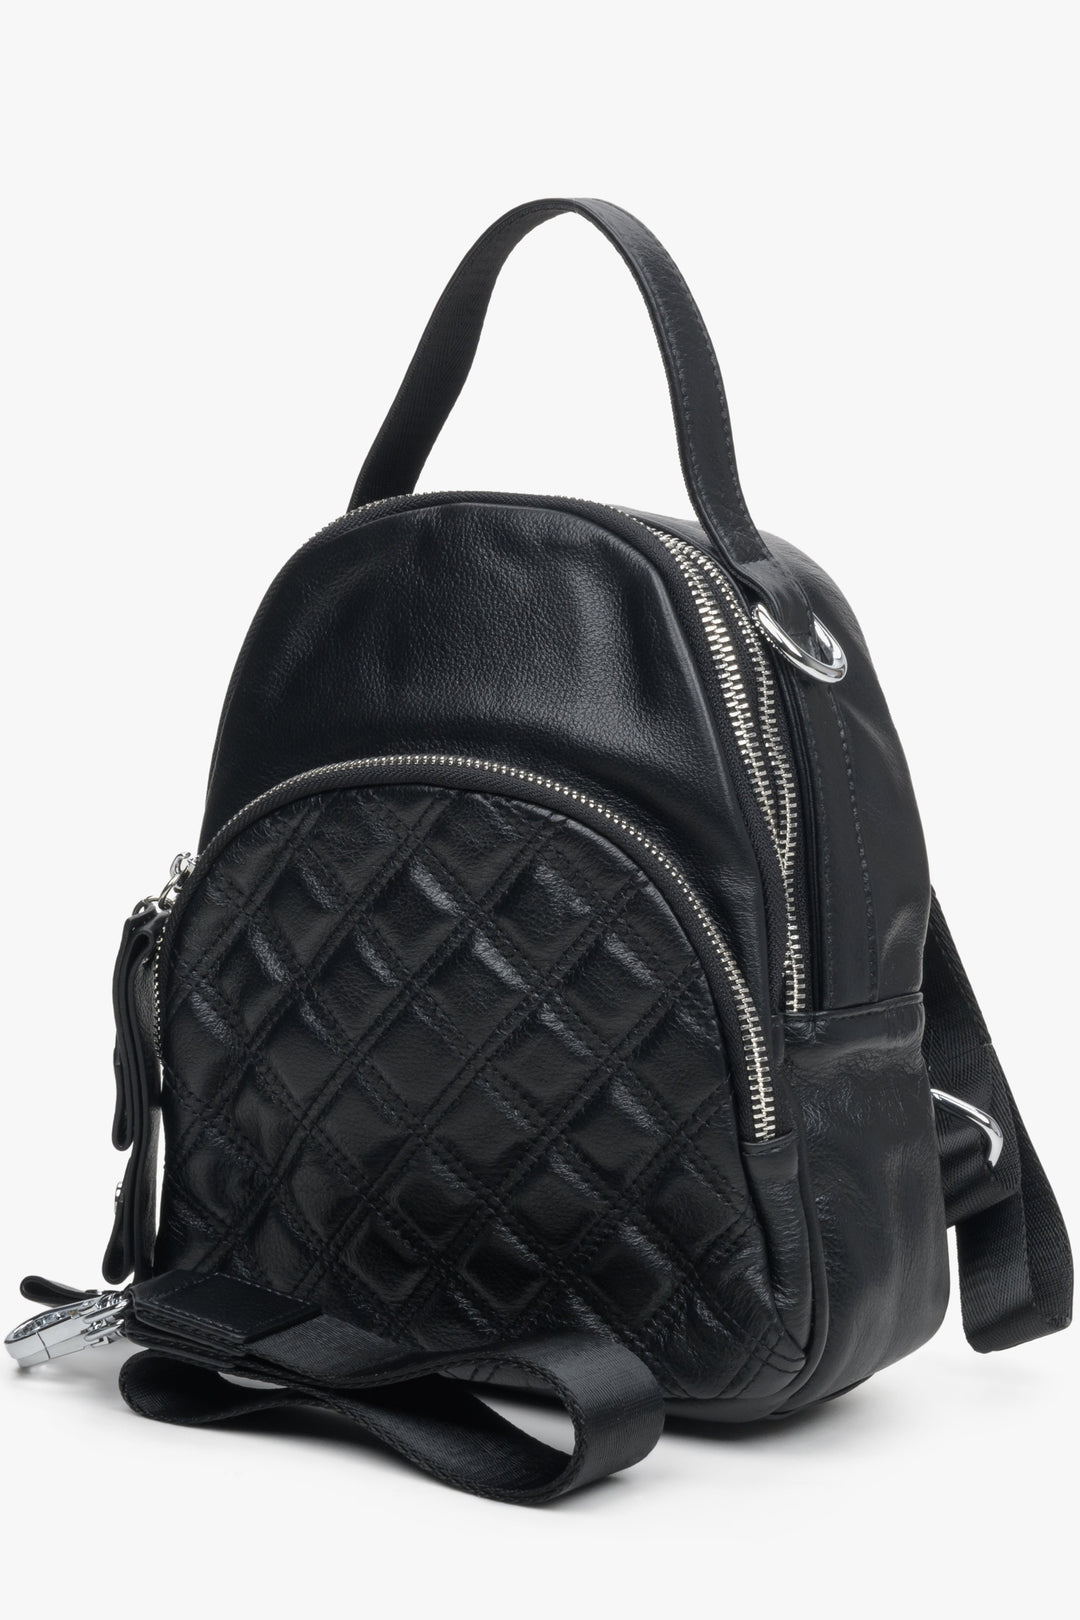 Mały, miejski plecak damski w kolorze czarnym Estro - przód modelu.